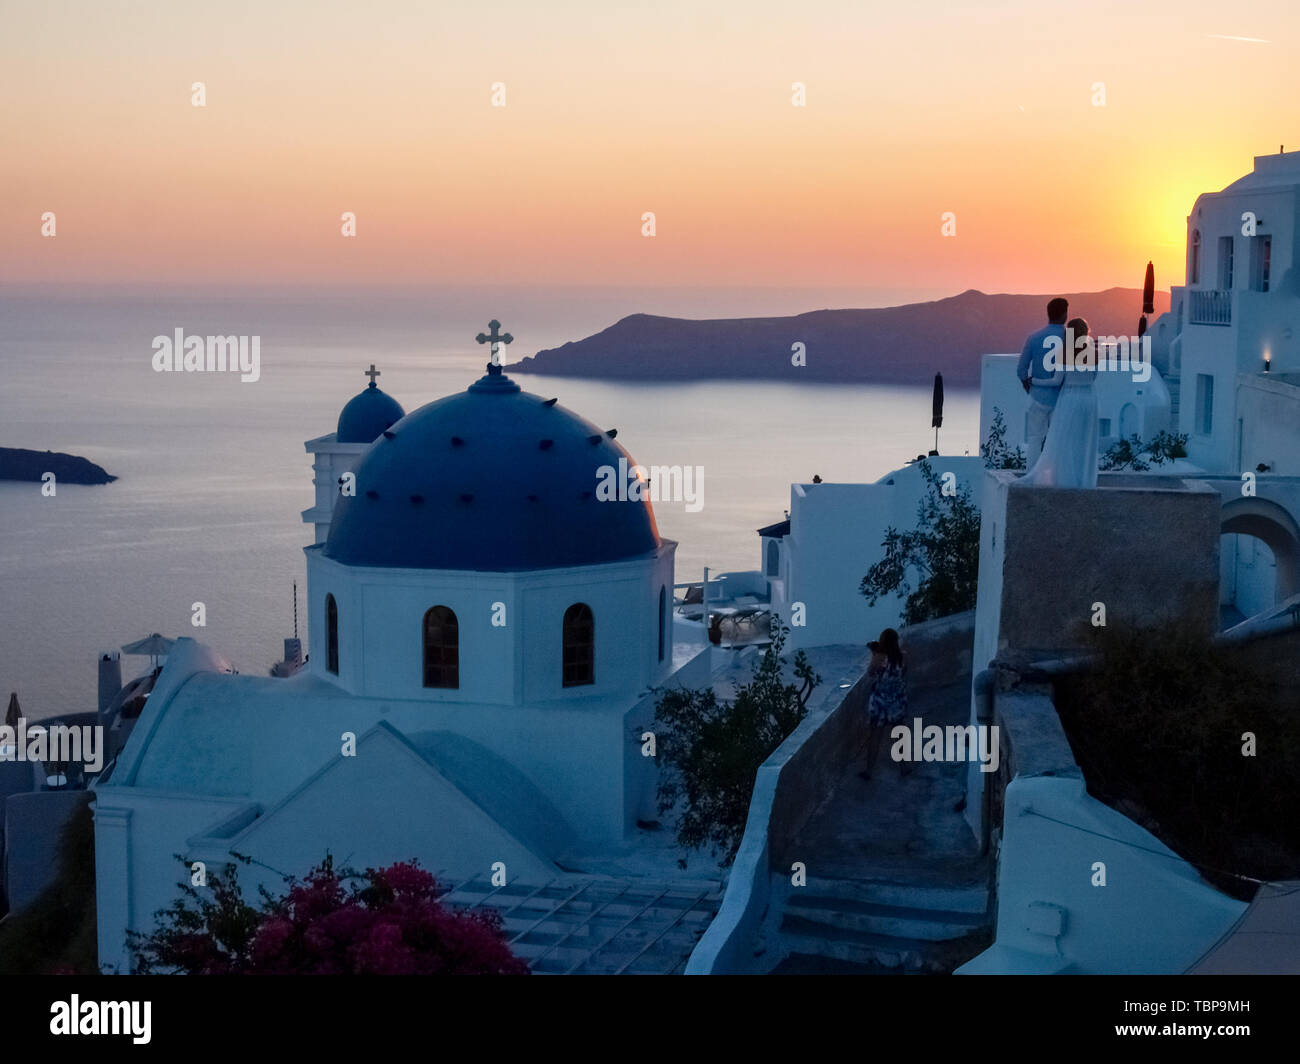 Santorini, Greece: Panorama at sunset and at night Stock Photo